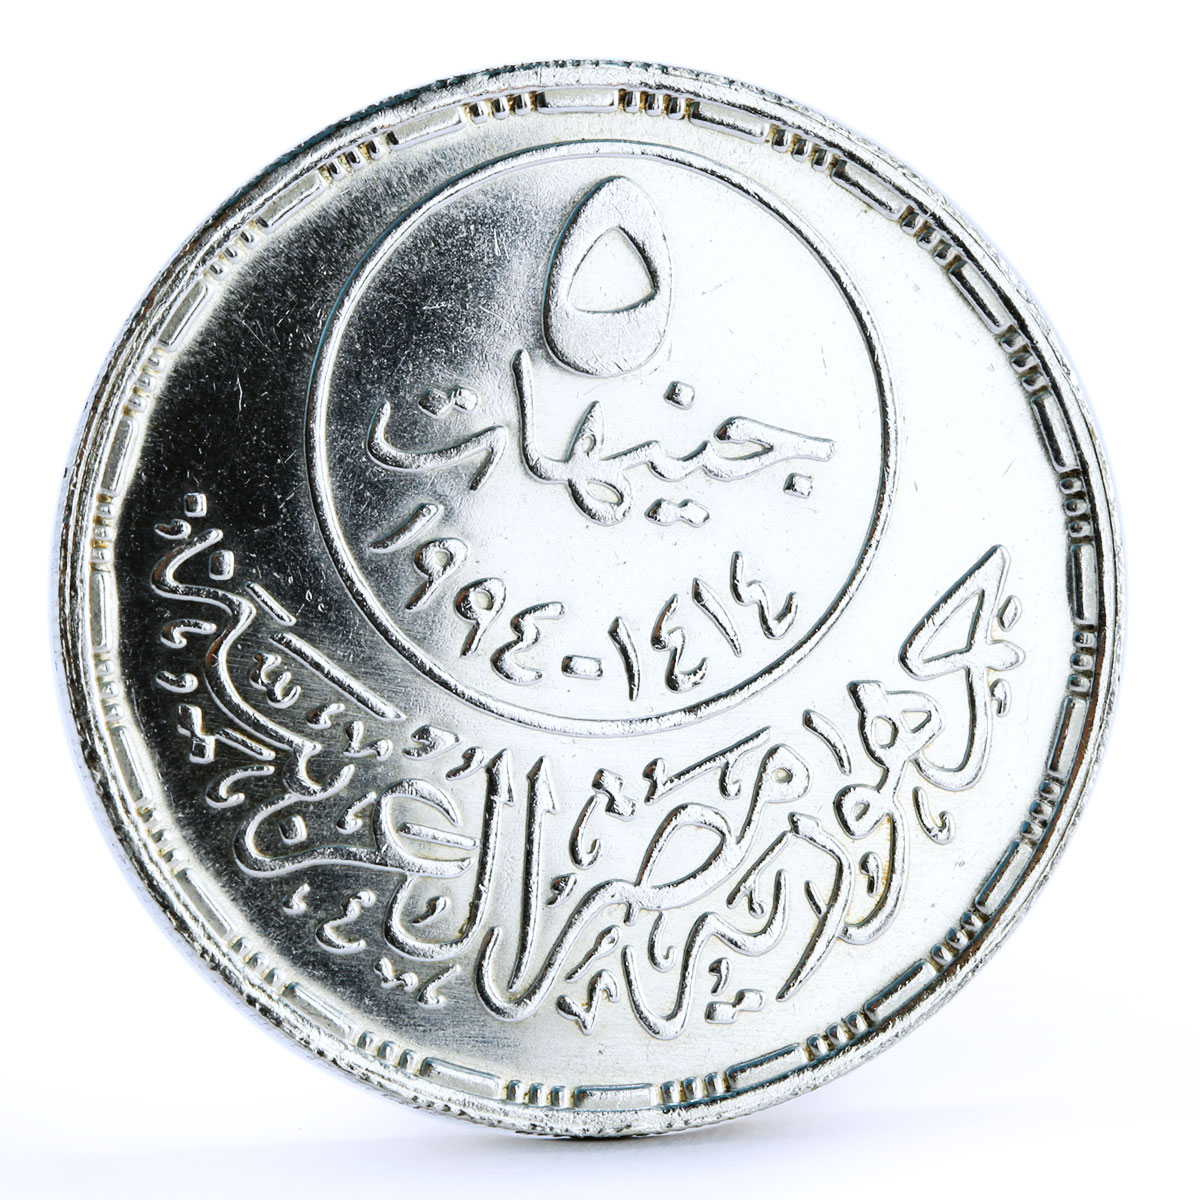 Egypt 5 pounds Sultan Saladin Mosque Horseman Politician Leader silver coin 1994